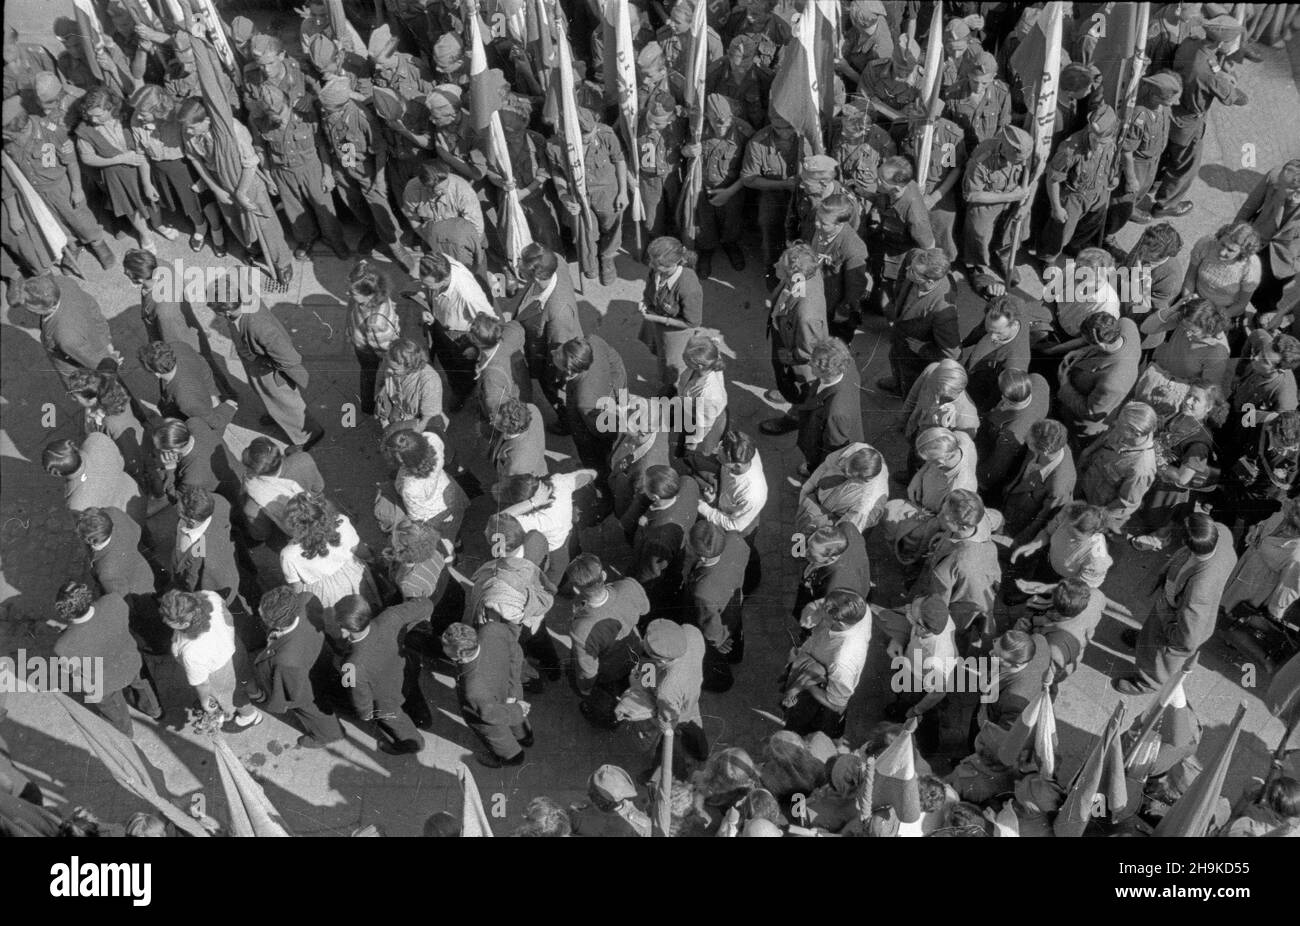 Wroc³aw, 1948-08-18. Miêdzynarodowa Konferencja M³odzie¿y Pracuj¹cej, 8-14 sierpnia. Nz. delegaci Œwiatowej Federacji M³odzie¿y Demokratycznej (World Federation of Democratic Youth) na placu M³odzie¿owym.  ka  PAP    Wroclaw, Aug. 18, 1948. The Working Youth International Conference, August 8-14. Pictured: delegates of the World Federation of Democratic march along the Auschwitz Victims Street in the direction of the Youth square.   ka  PAP Stock Photo